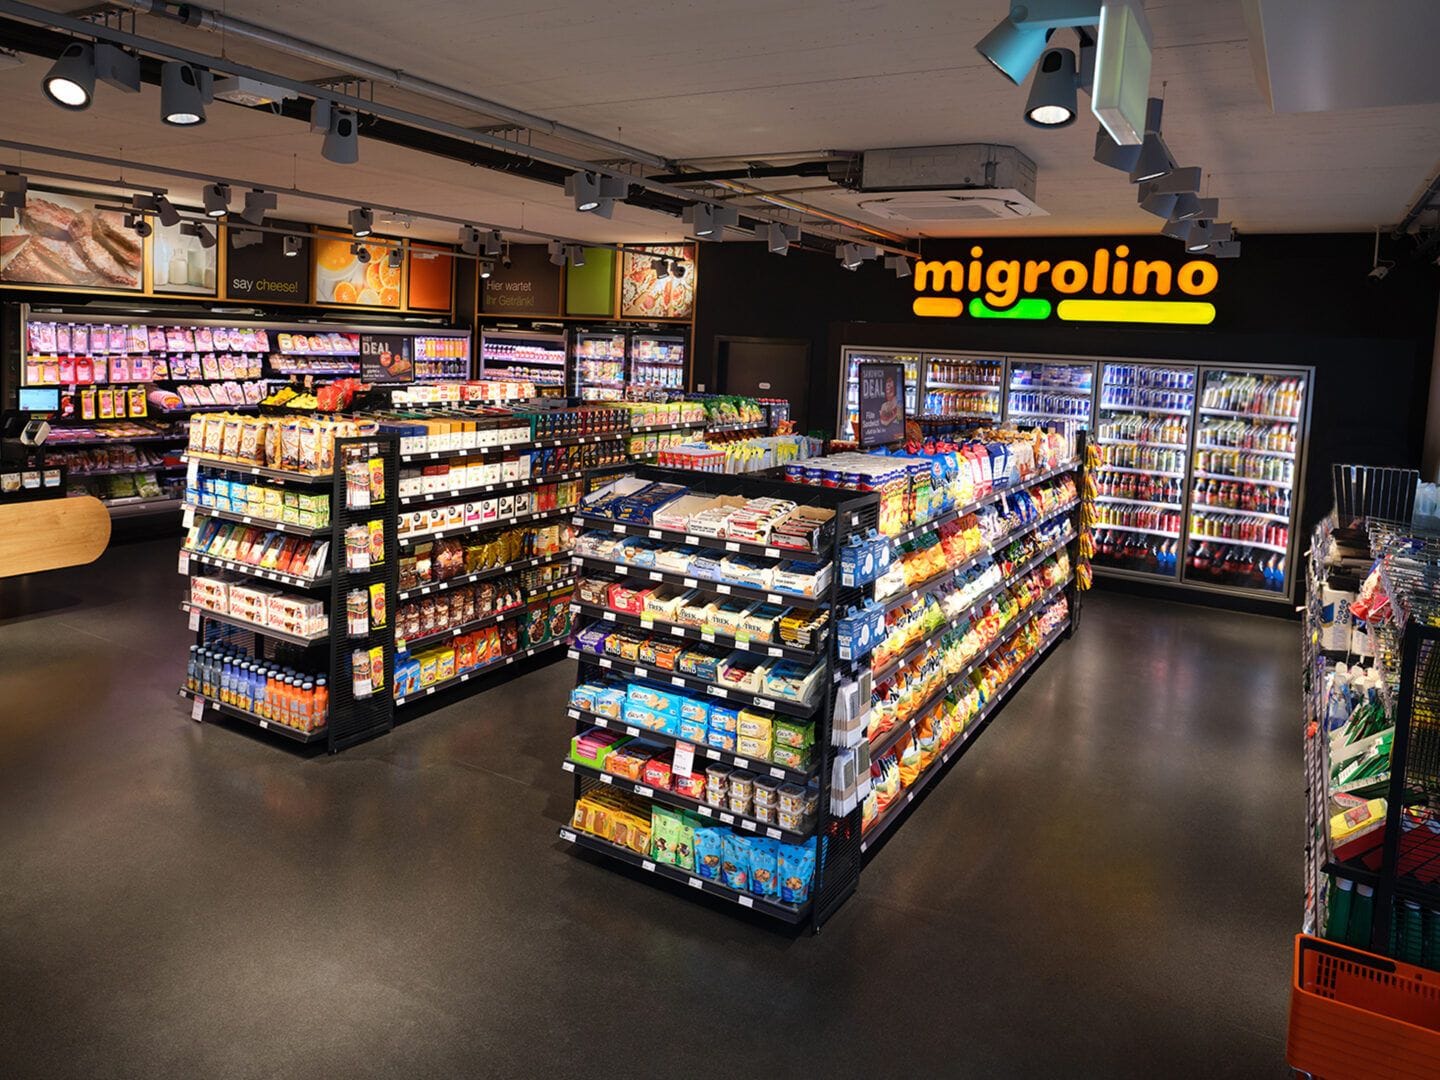 В магазине migrolino на АЗС продается около 2000 наименований товаров повседневного спроса